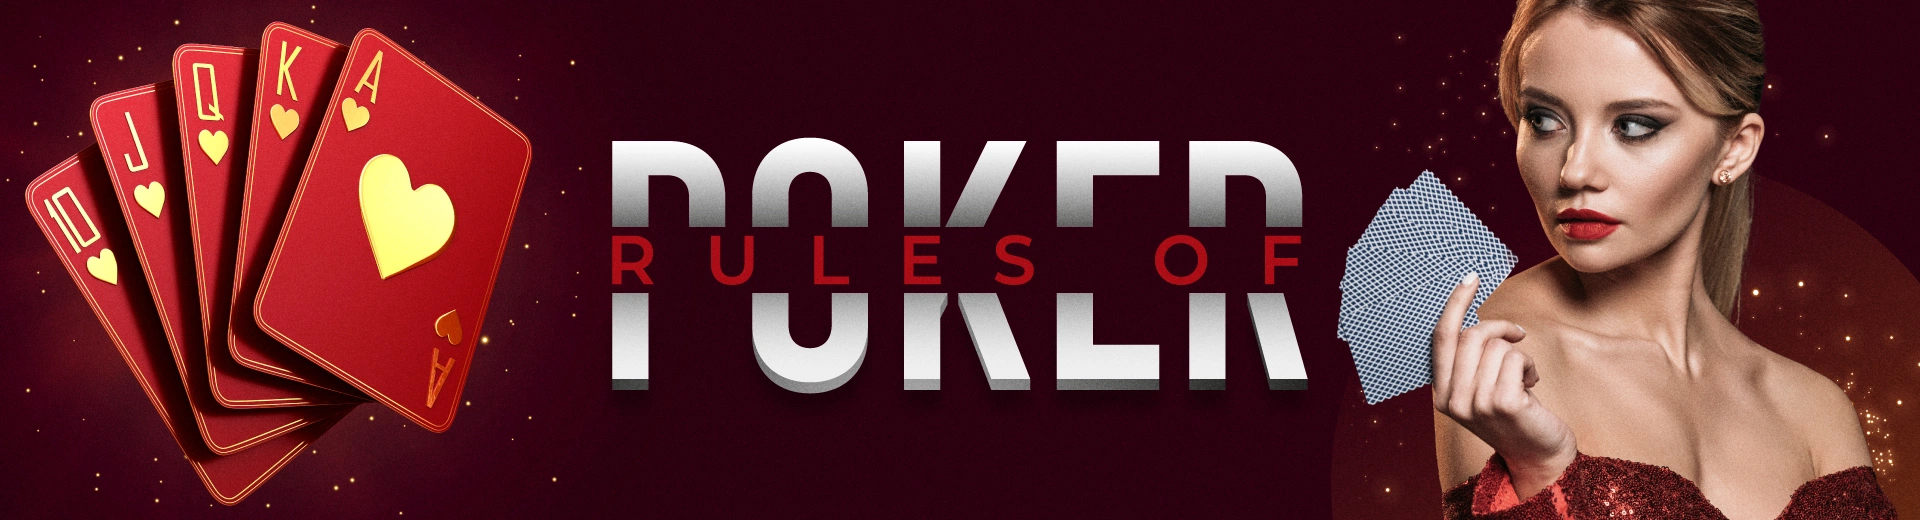 Top 5 Rules of Poker in OKBET Casino Live - OKBET poker